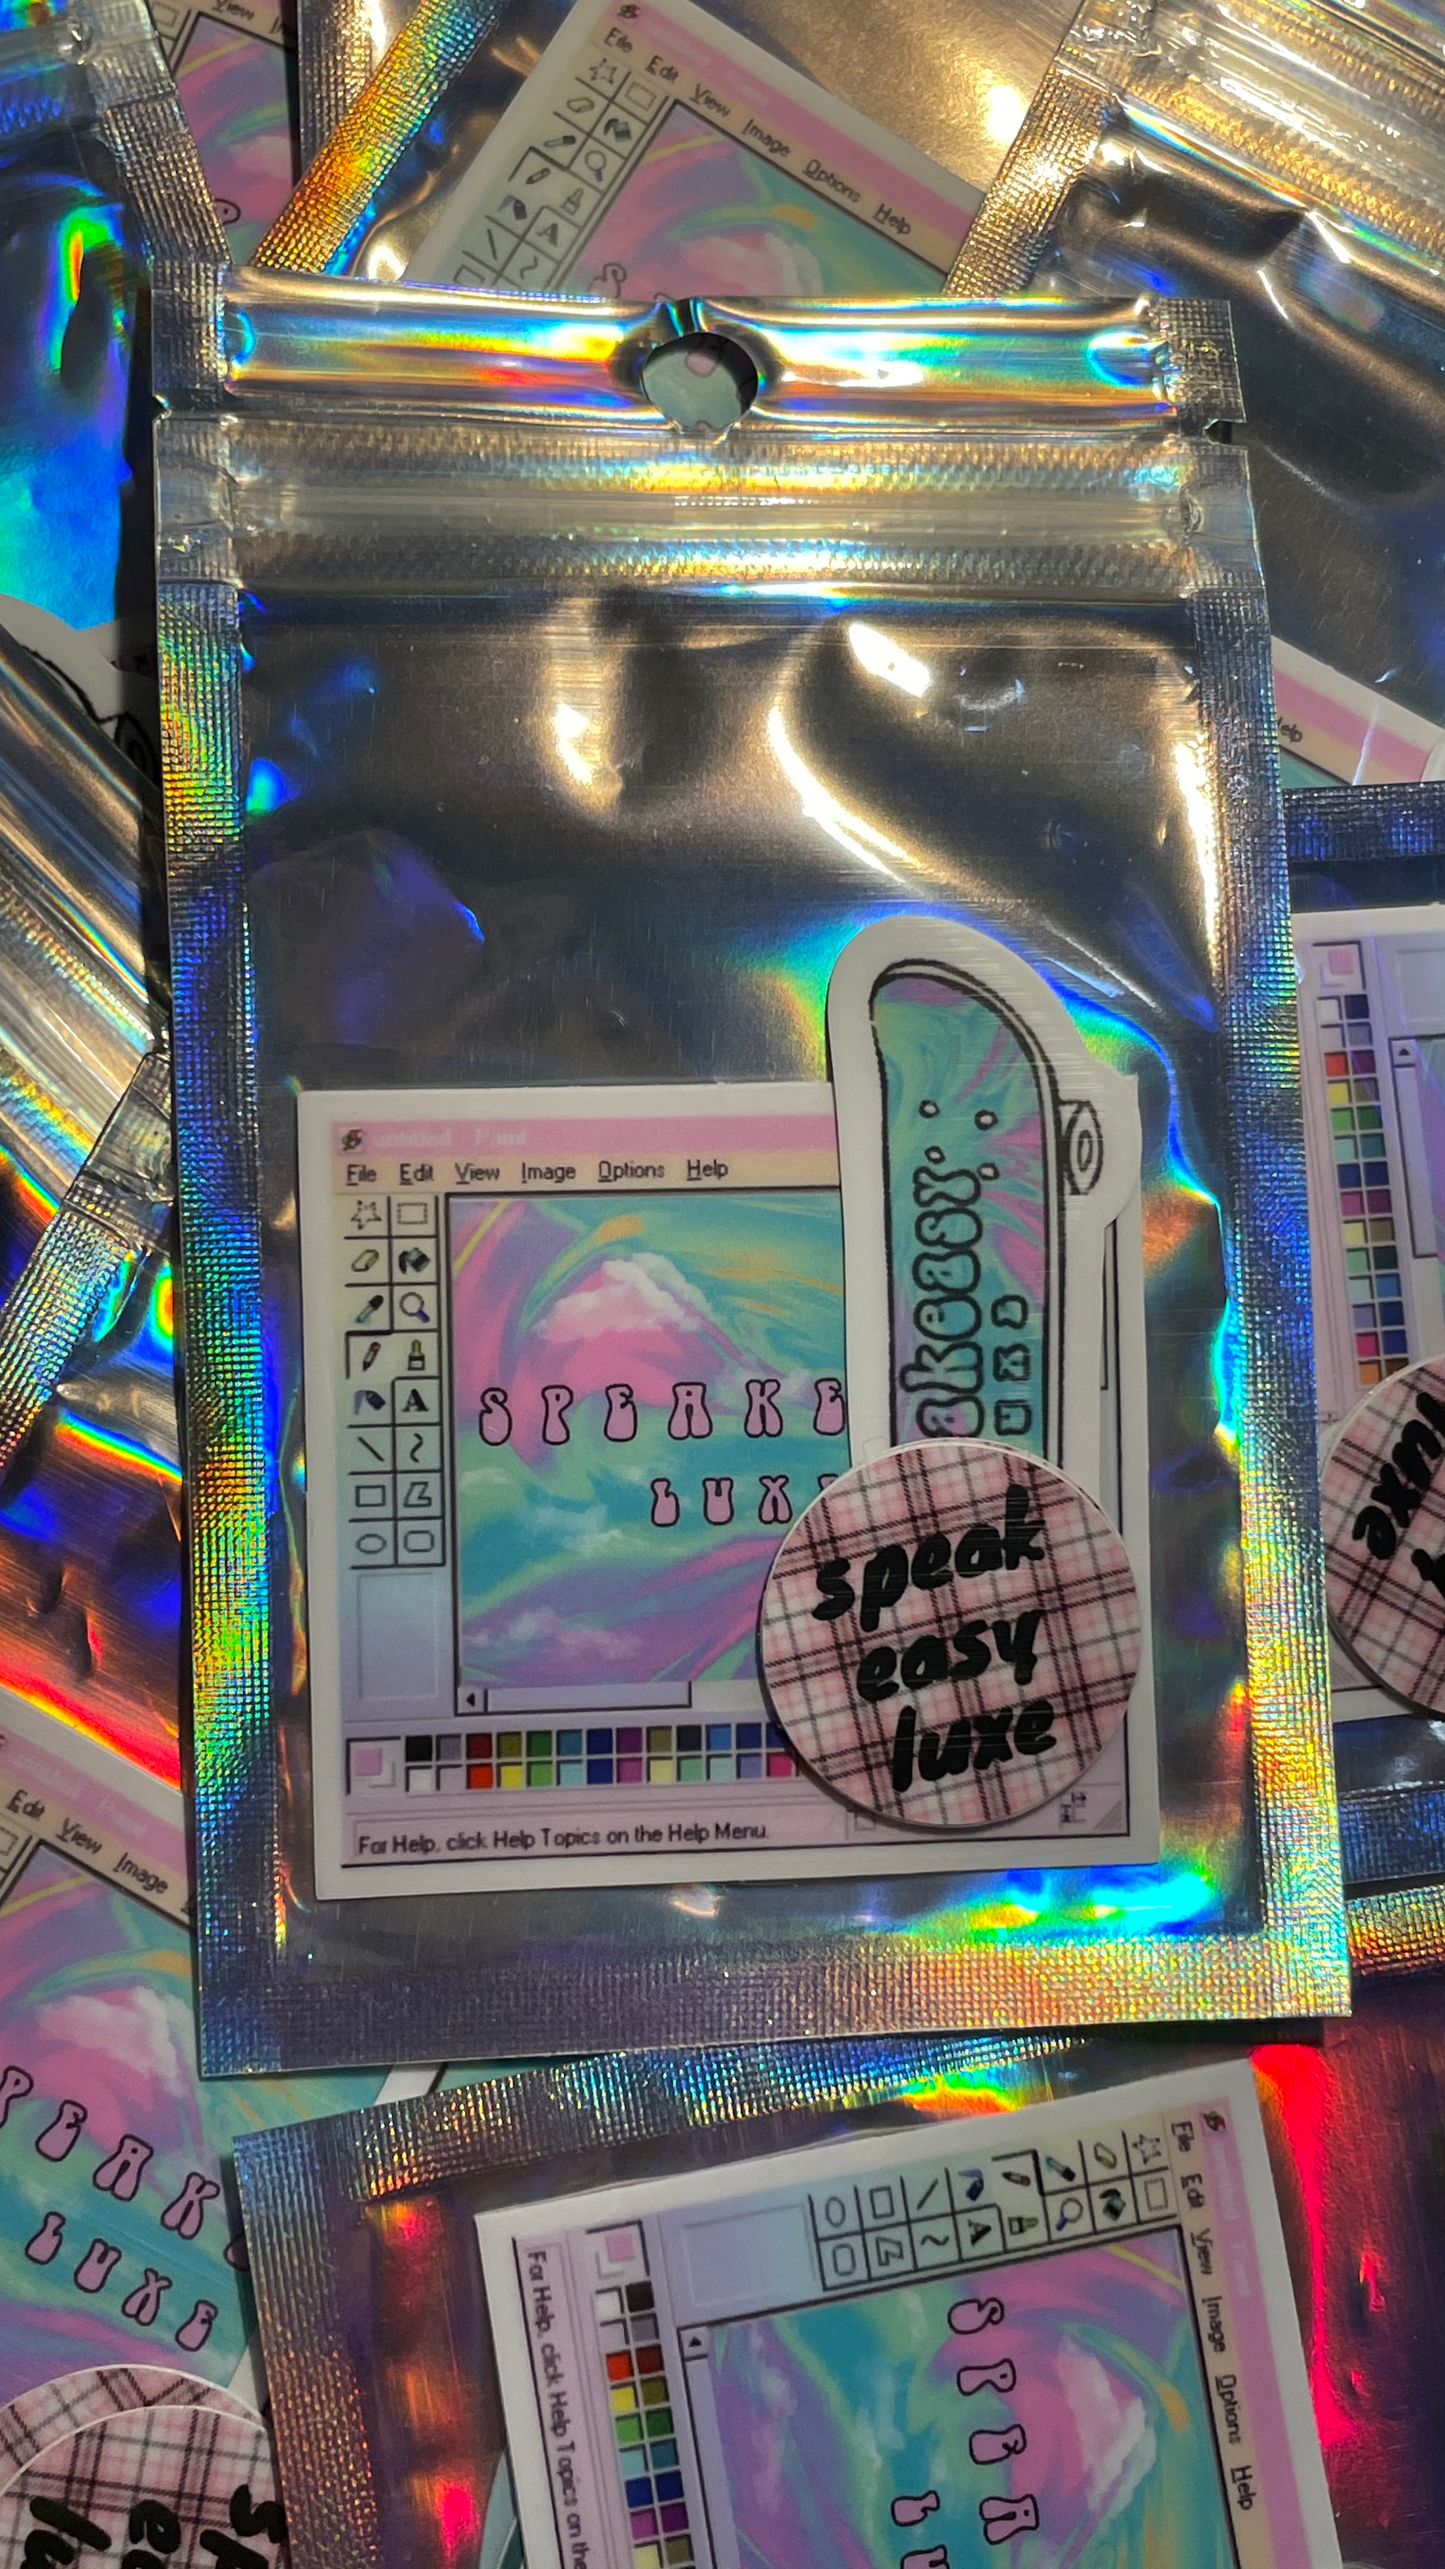 Speakeasy Luxe Sticker Pack